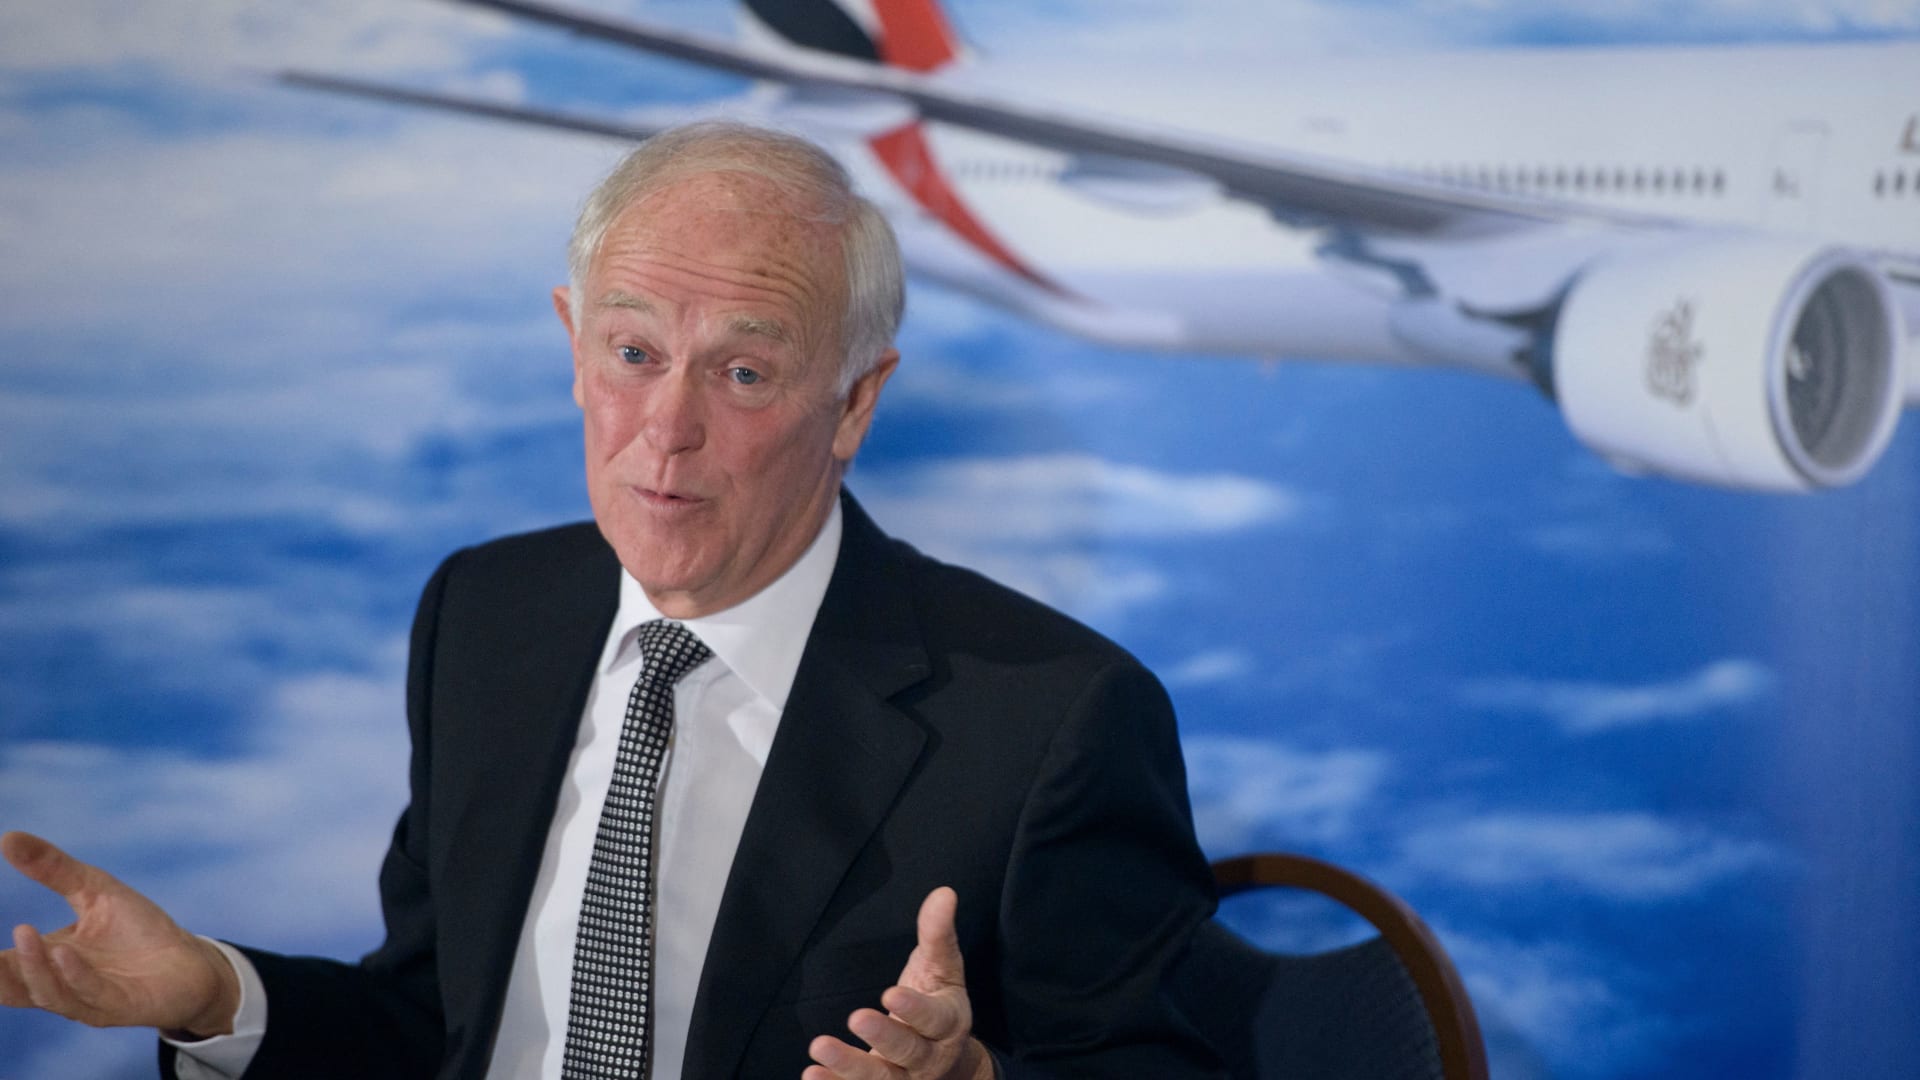 رئيس طيران الإمارات لـCNN عن أزمة الـ5G في أمريكا: موقف غير مسؤول